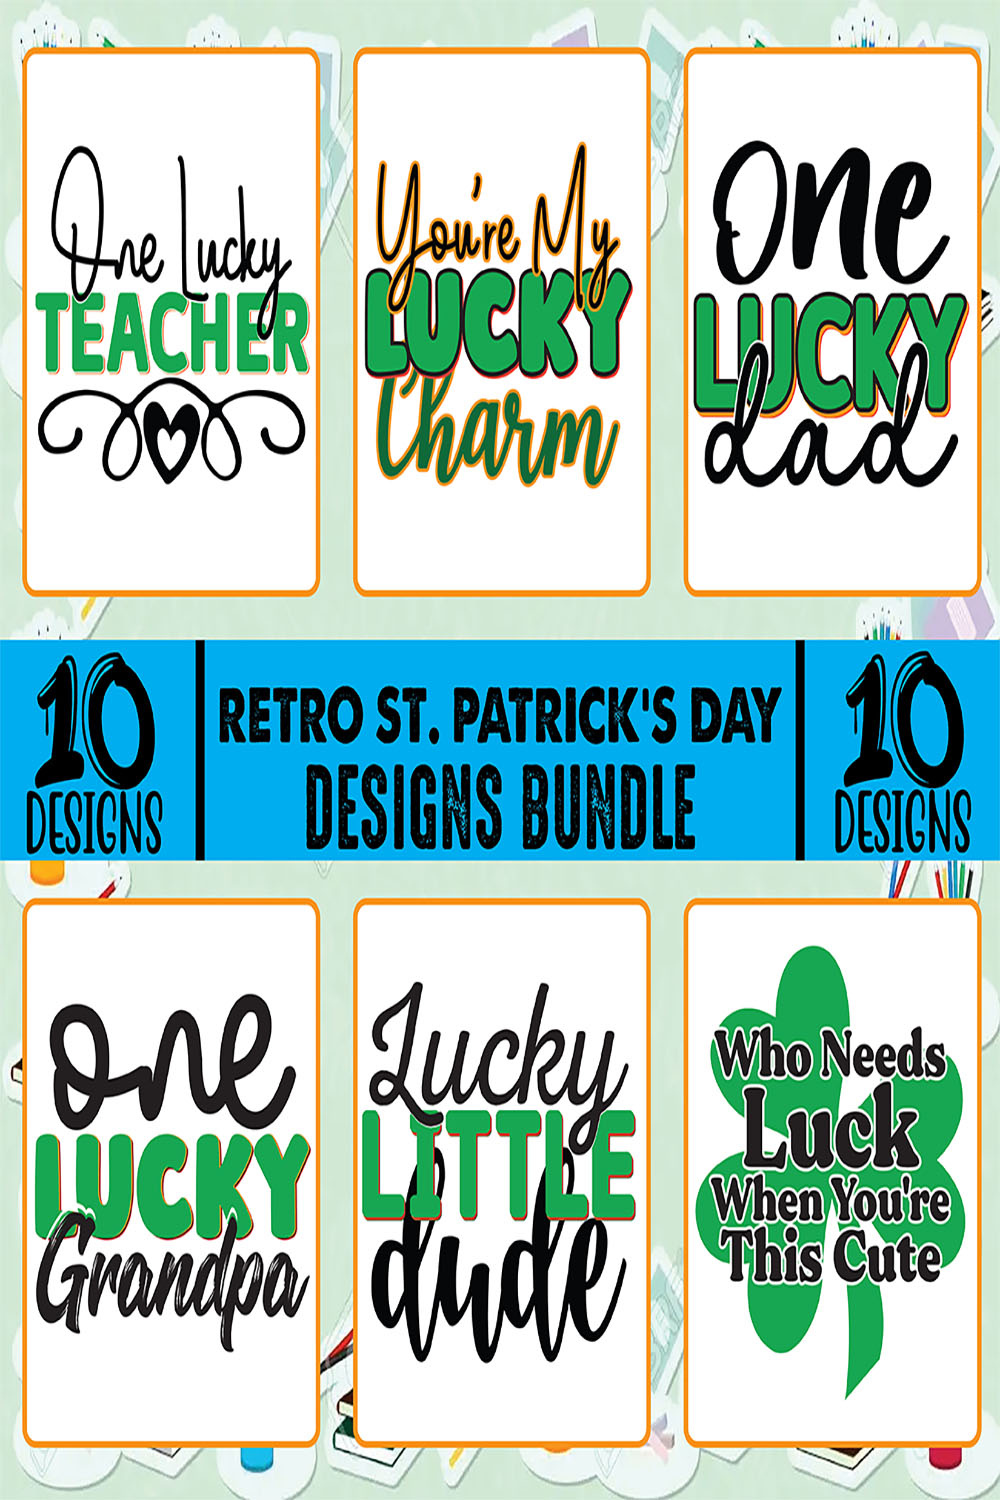 Retro St. Patrick's Day Designs Bundle pinterest image.